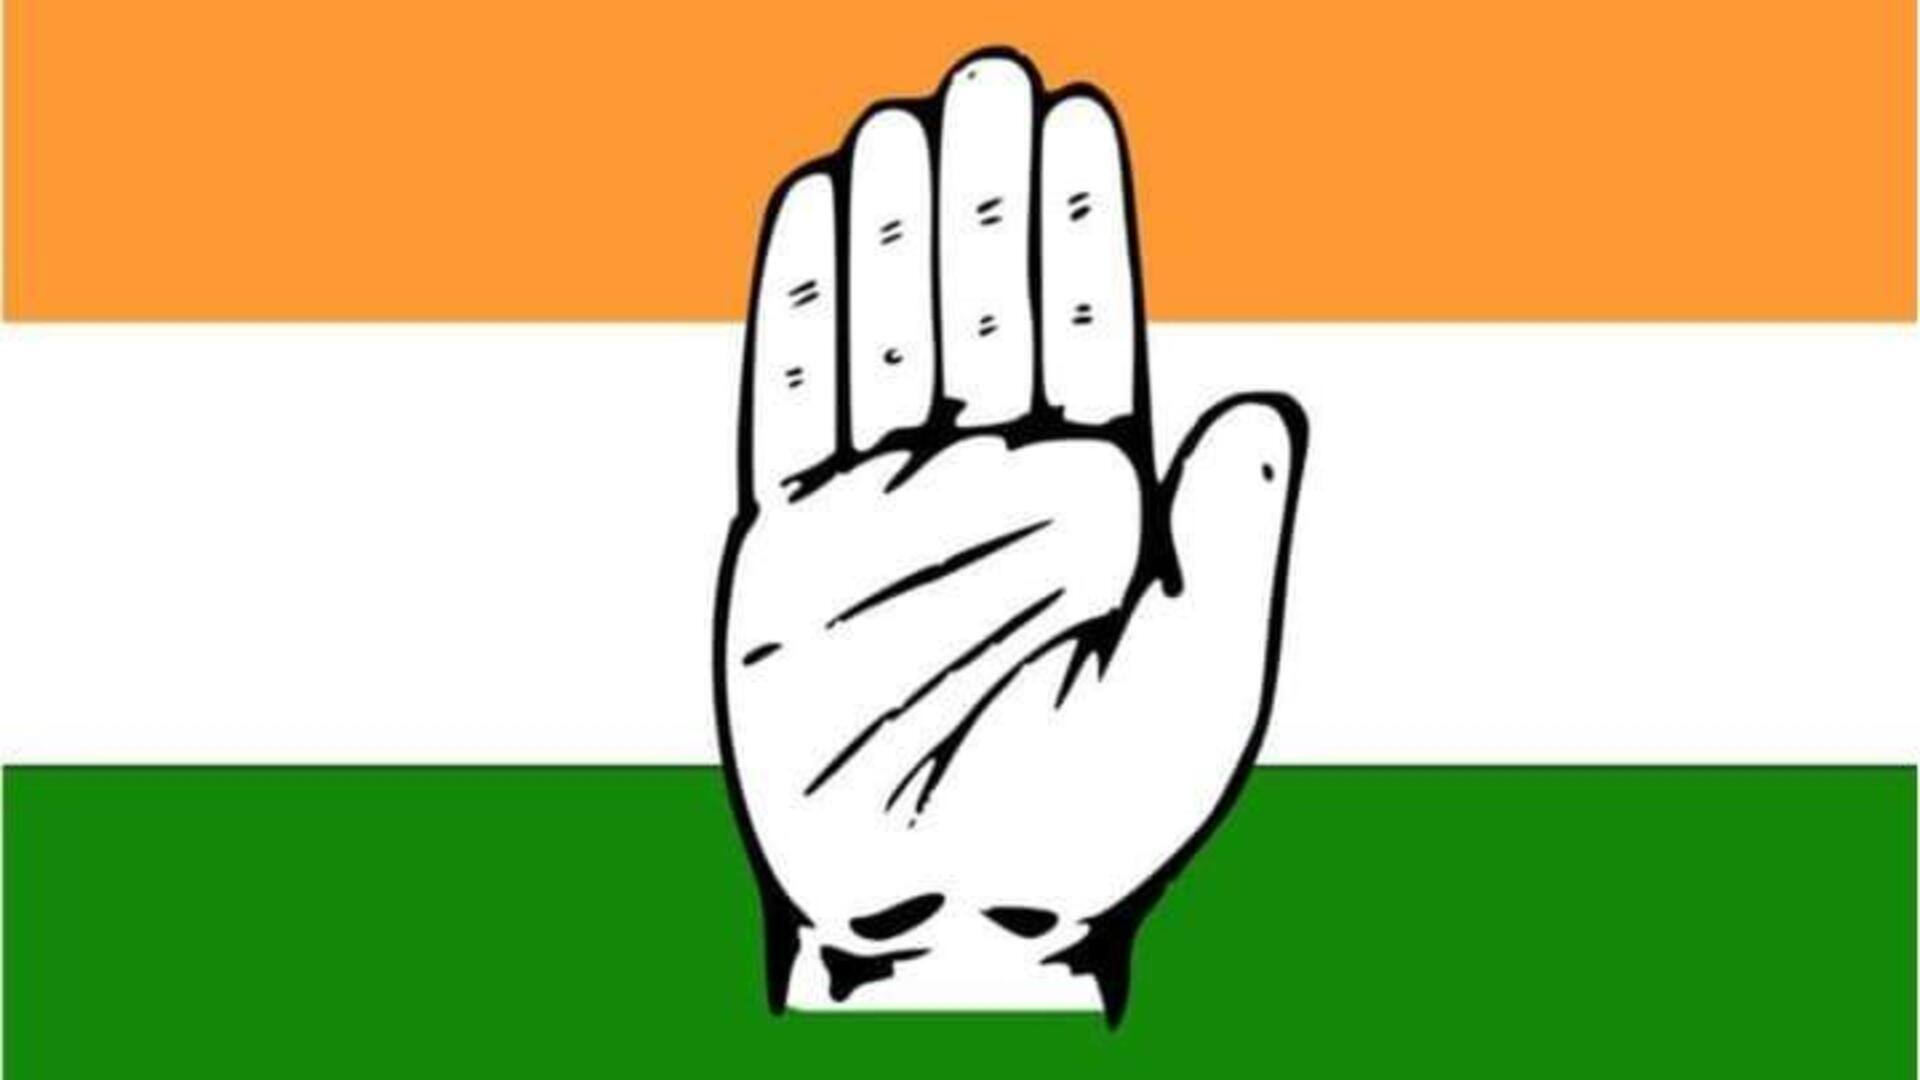 Telangana congress: కాంగ్రెస్ రెండో జాబితో 22మంది రెడ్లు, 8మంది బీసీలు